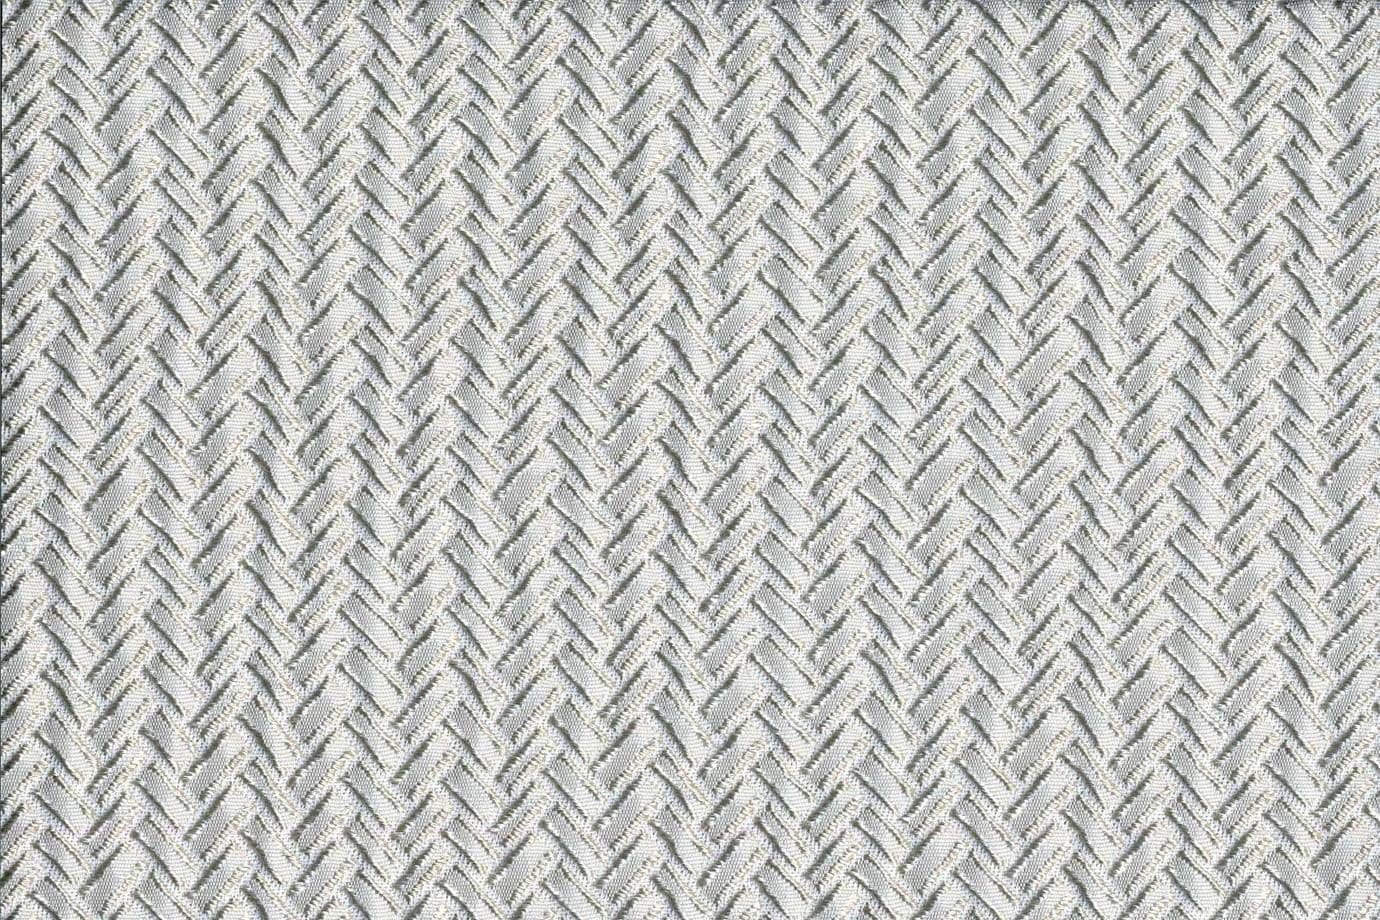 J1951 SECONDIGLIANO 003 Perla home decoration fabric